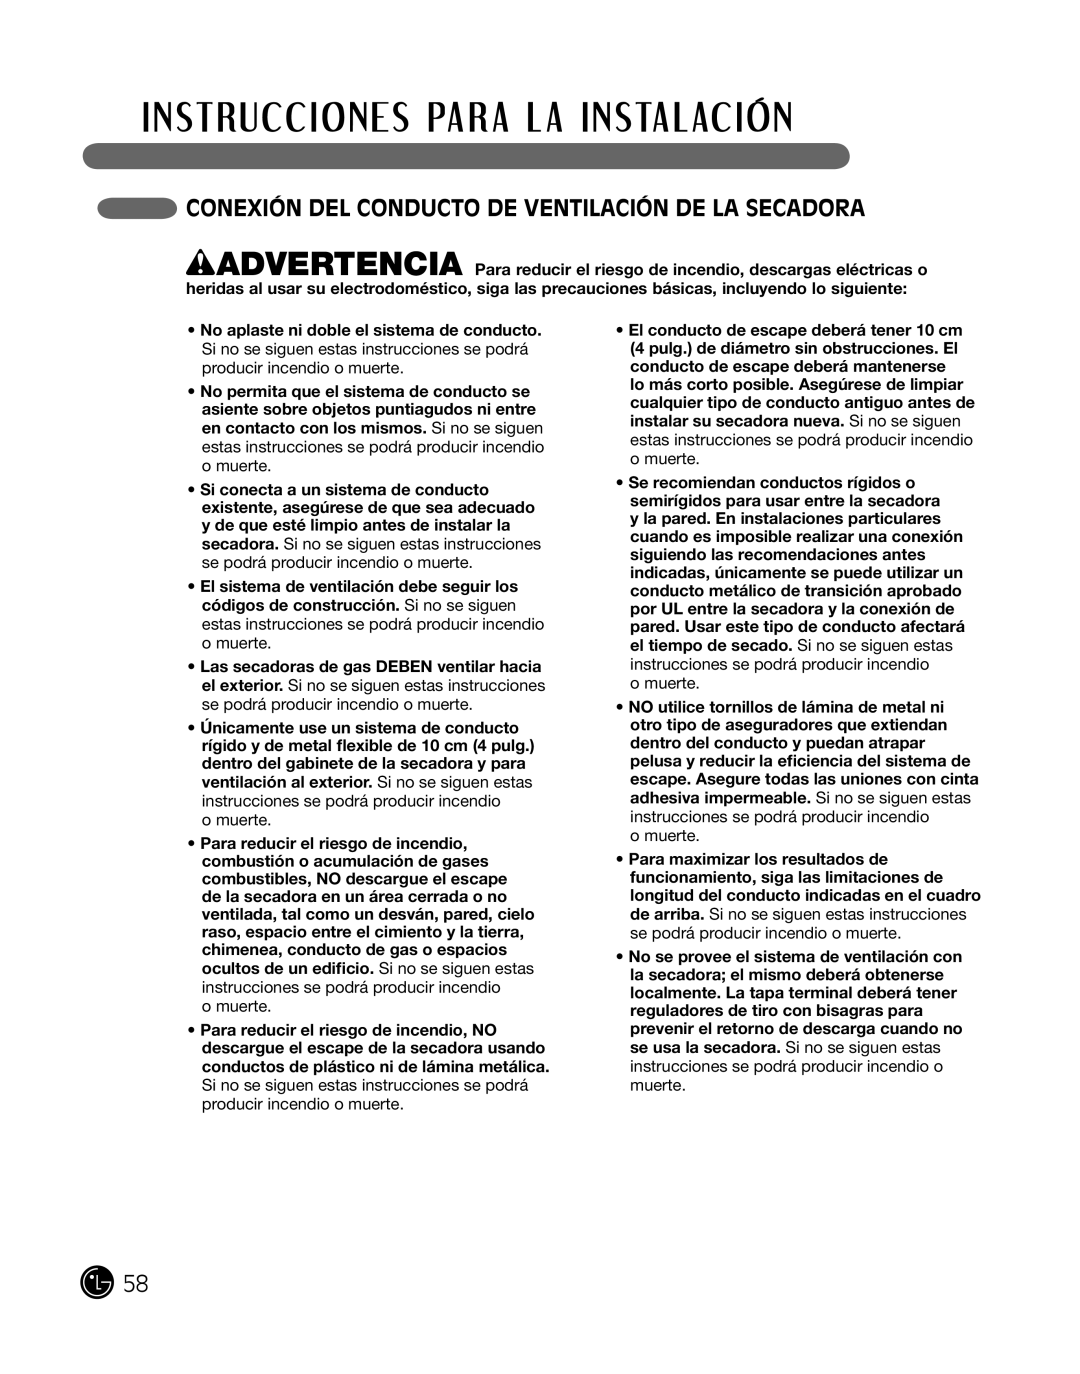 LG Electronics P154 manual coneXiÓn del conducTo de venTilaciÓn de la Secadora, o muerte 